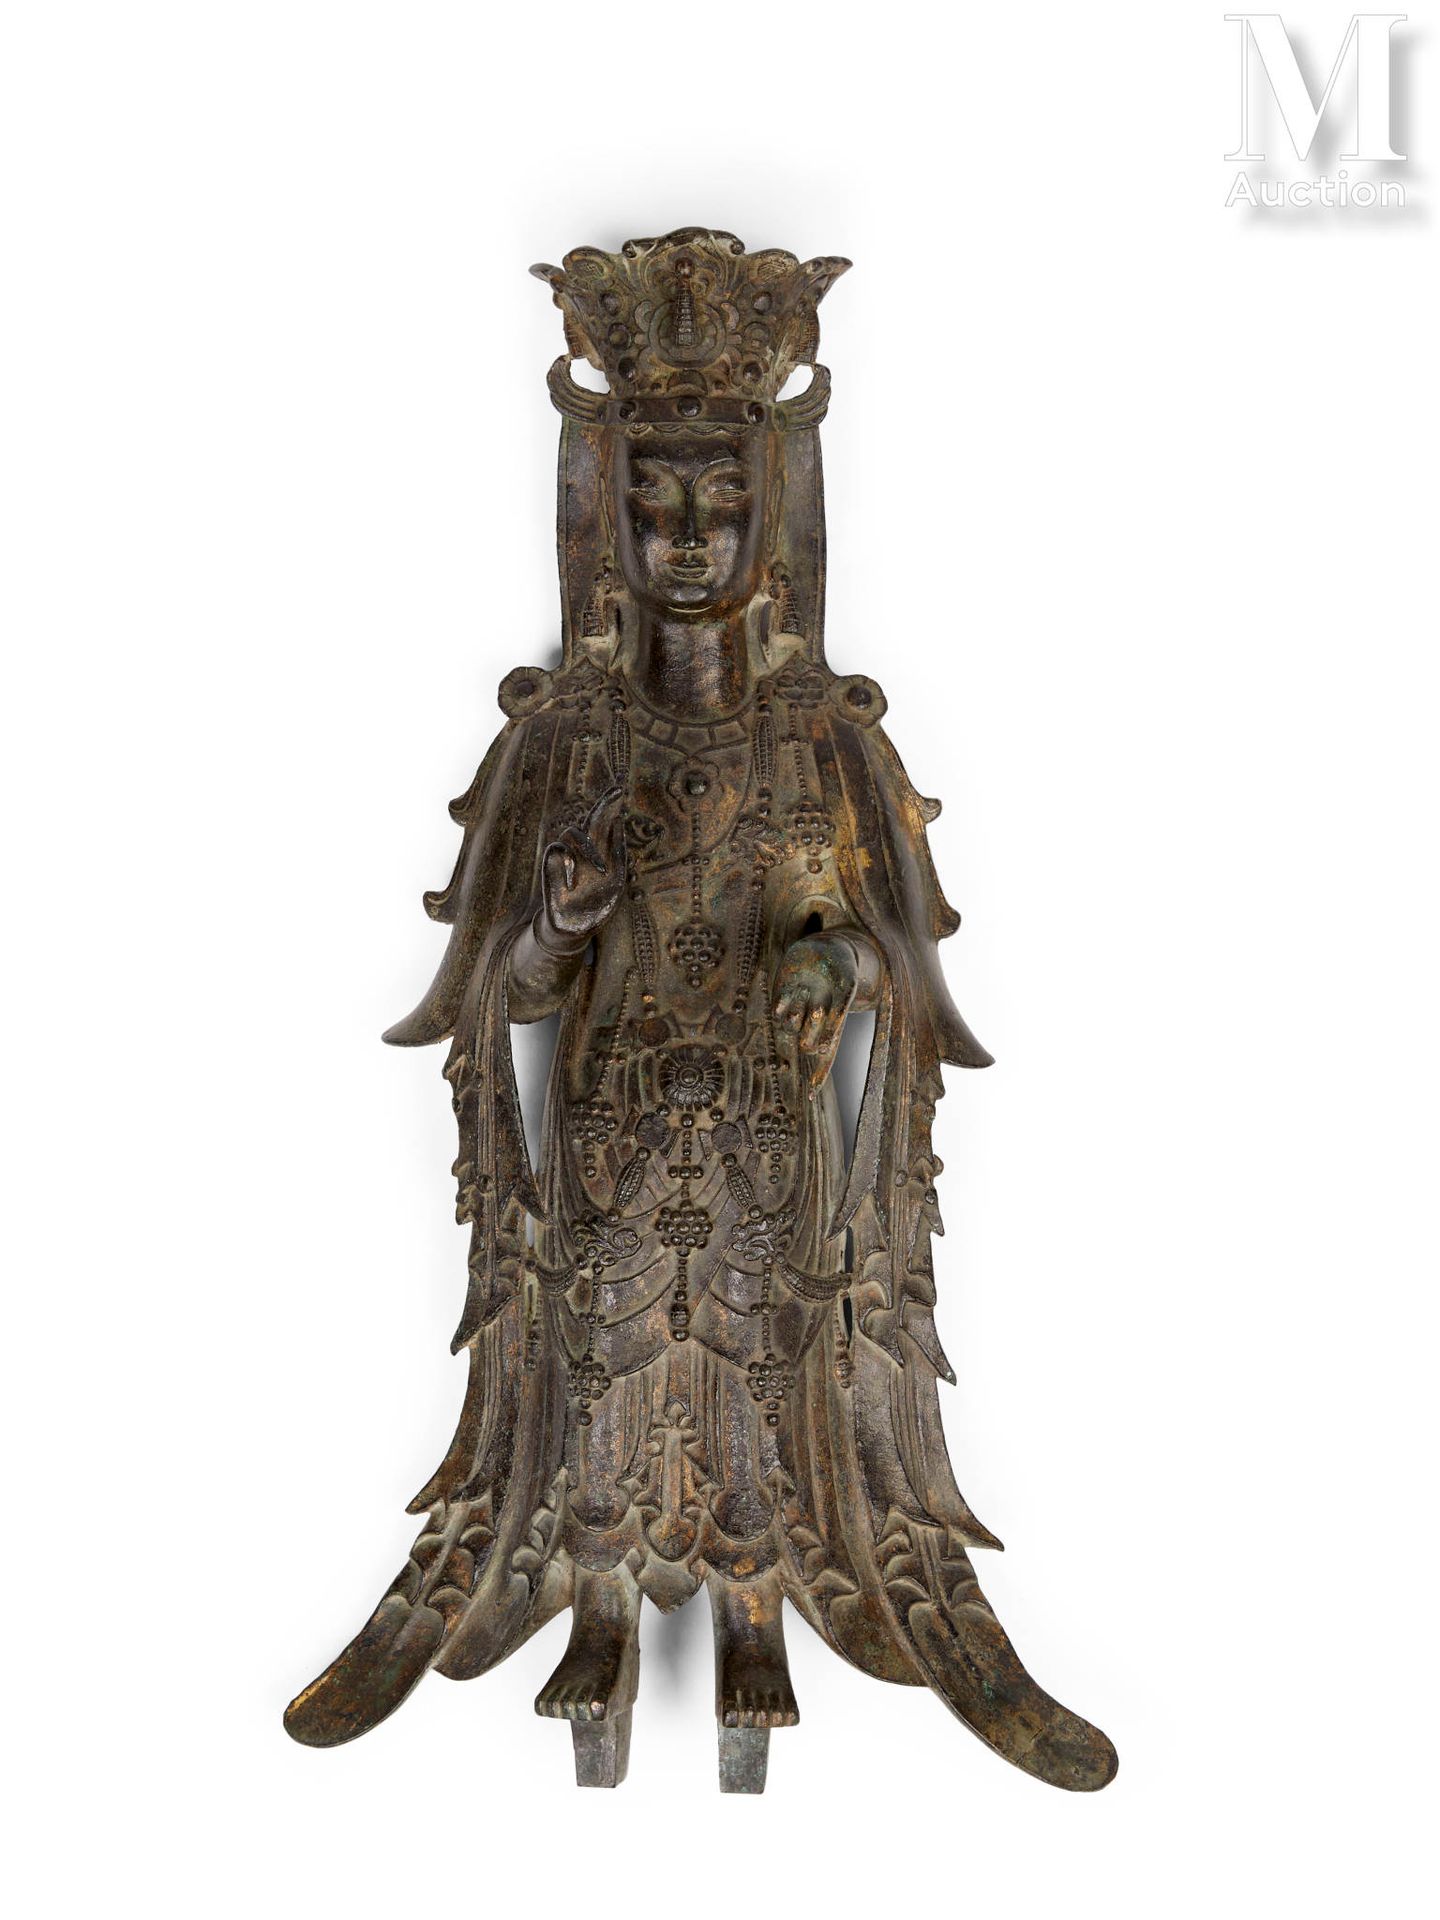 CHINE, Dynastie Sui (581-618) 重要的观音菩萨铜像

观音菩萨站立着，腰间系着腰带，戴着长围巾，围巾上的褶皱落在地上。她佩戴着大量的&hellip;